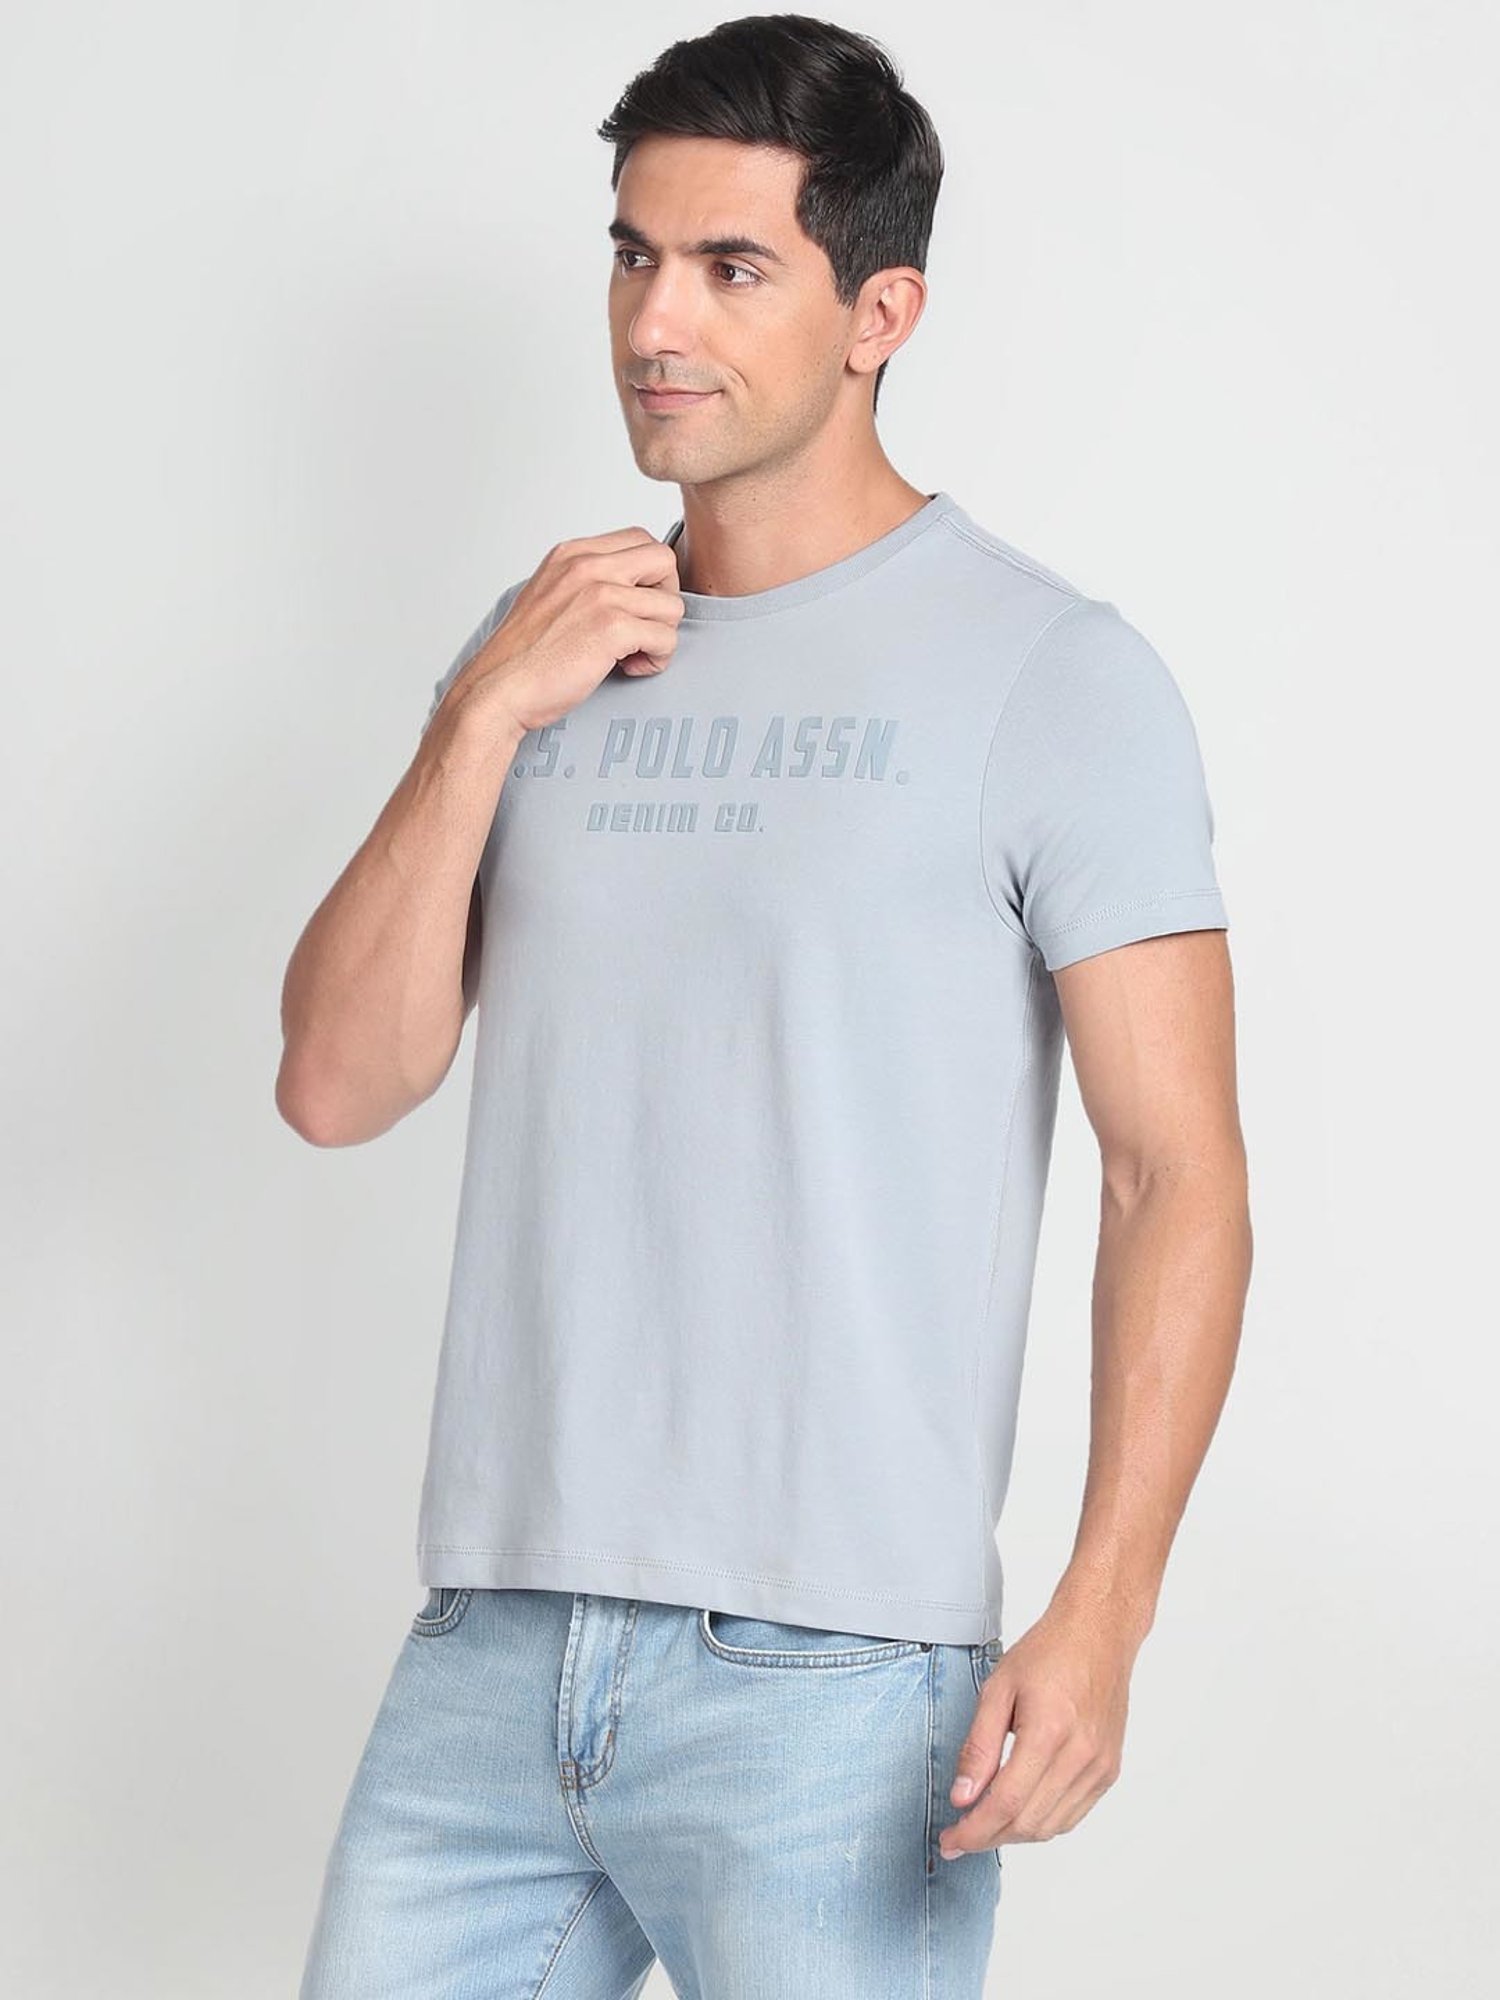 Amazon Brand - INKAST Men's Slim Shirt : Amazon.in: Fashion